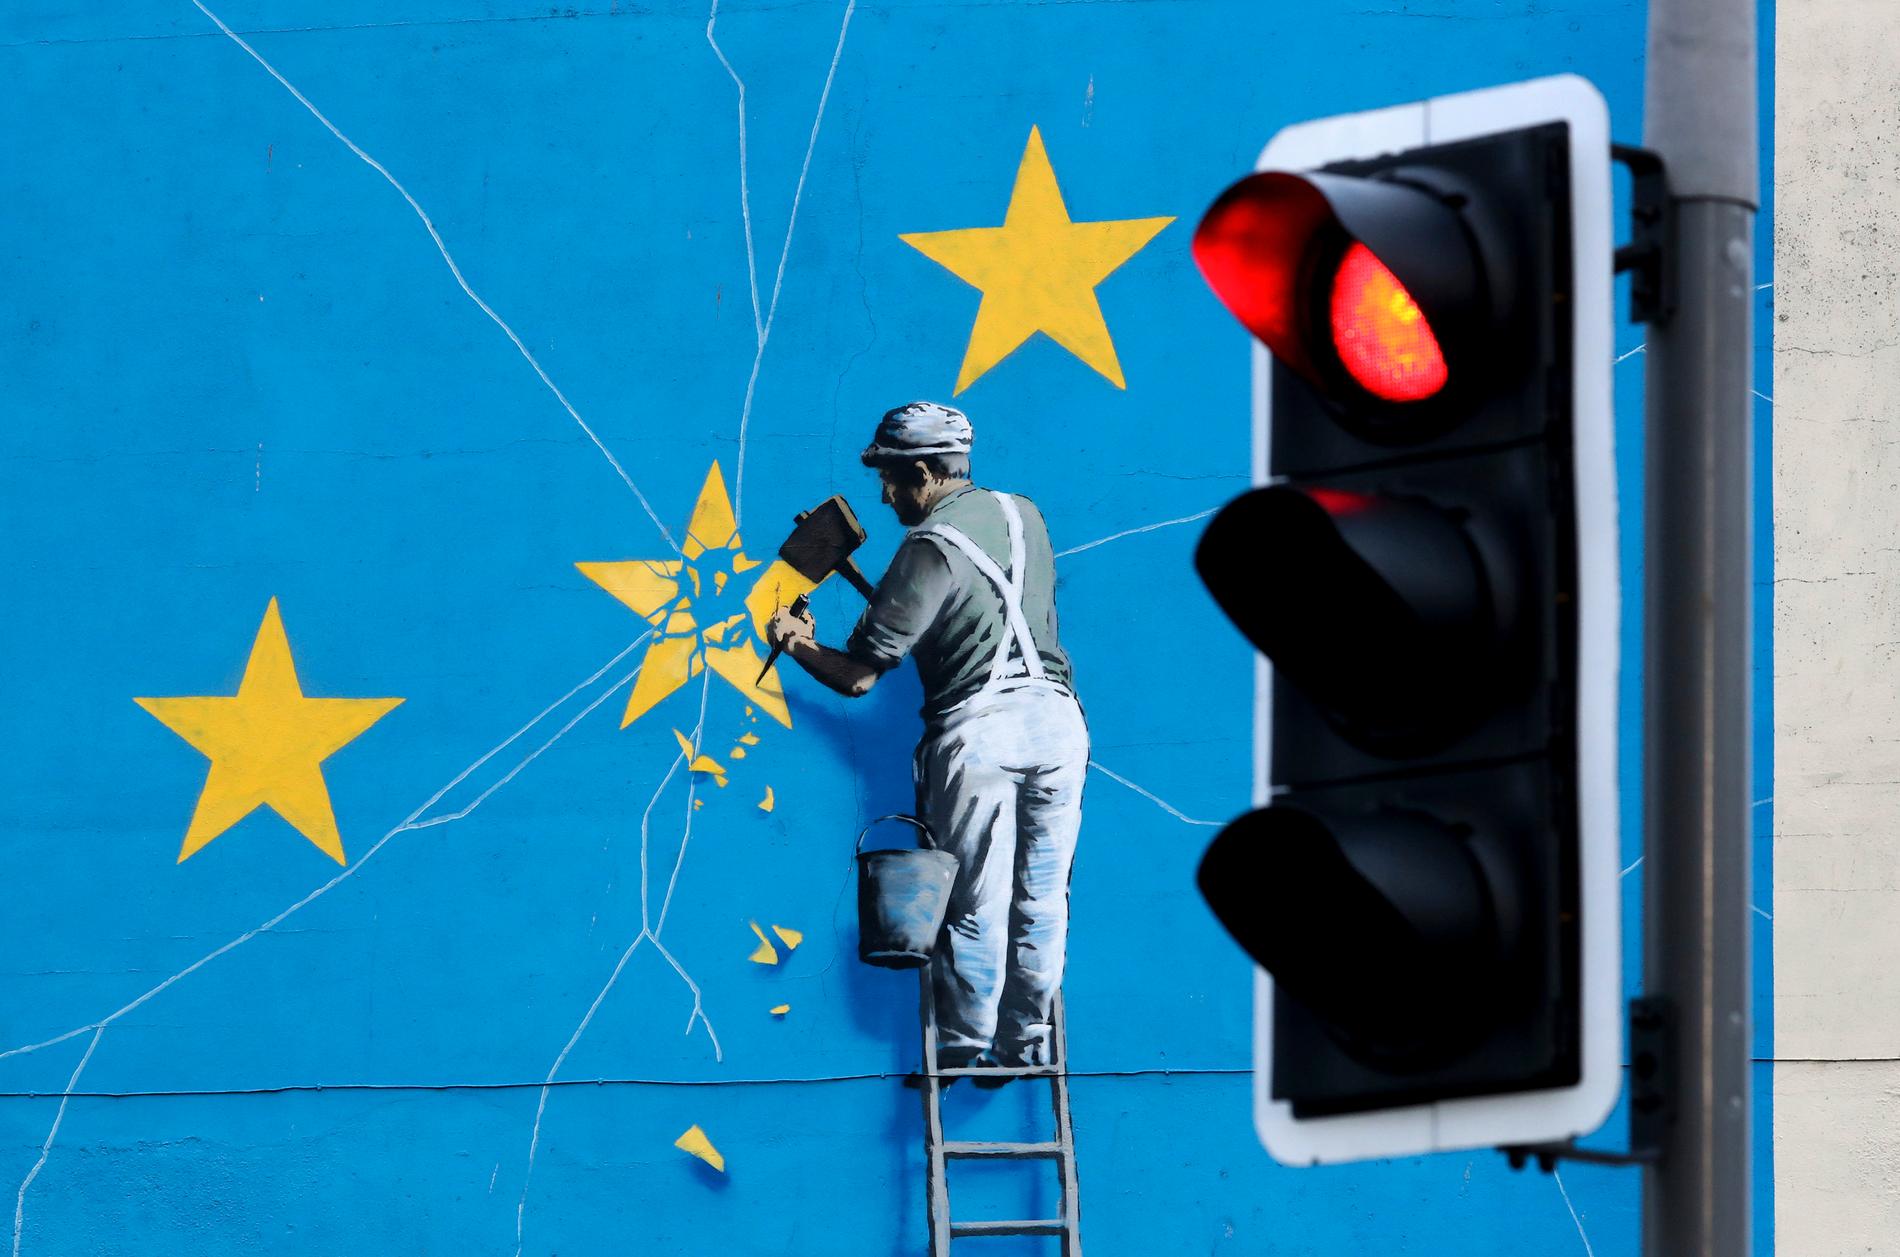 En muralmålning av konstnären Banksy föreställande en arbetare som knackar bort en stjärna på EU:s flagga. På onsdagen håller det konservativa partiet i Storbritannien förtroendeomröstning om sin partiledare Theresa May, en omröstning som påverkar brexit. Arkivbild.